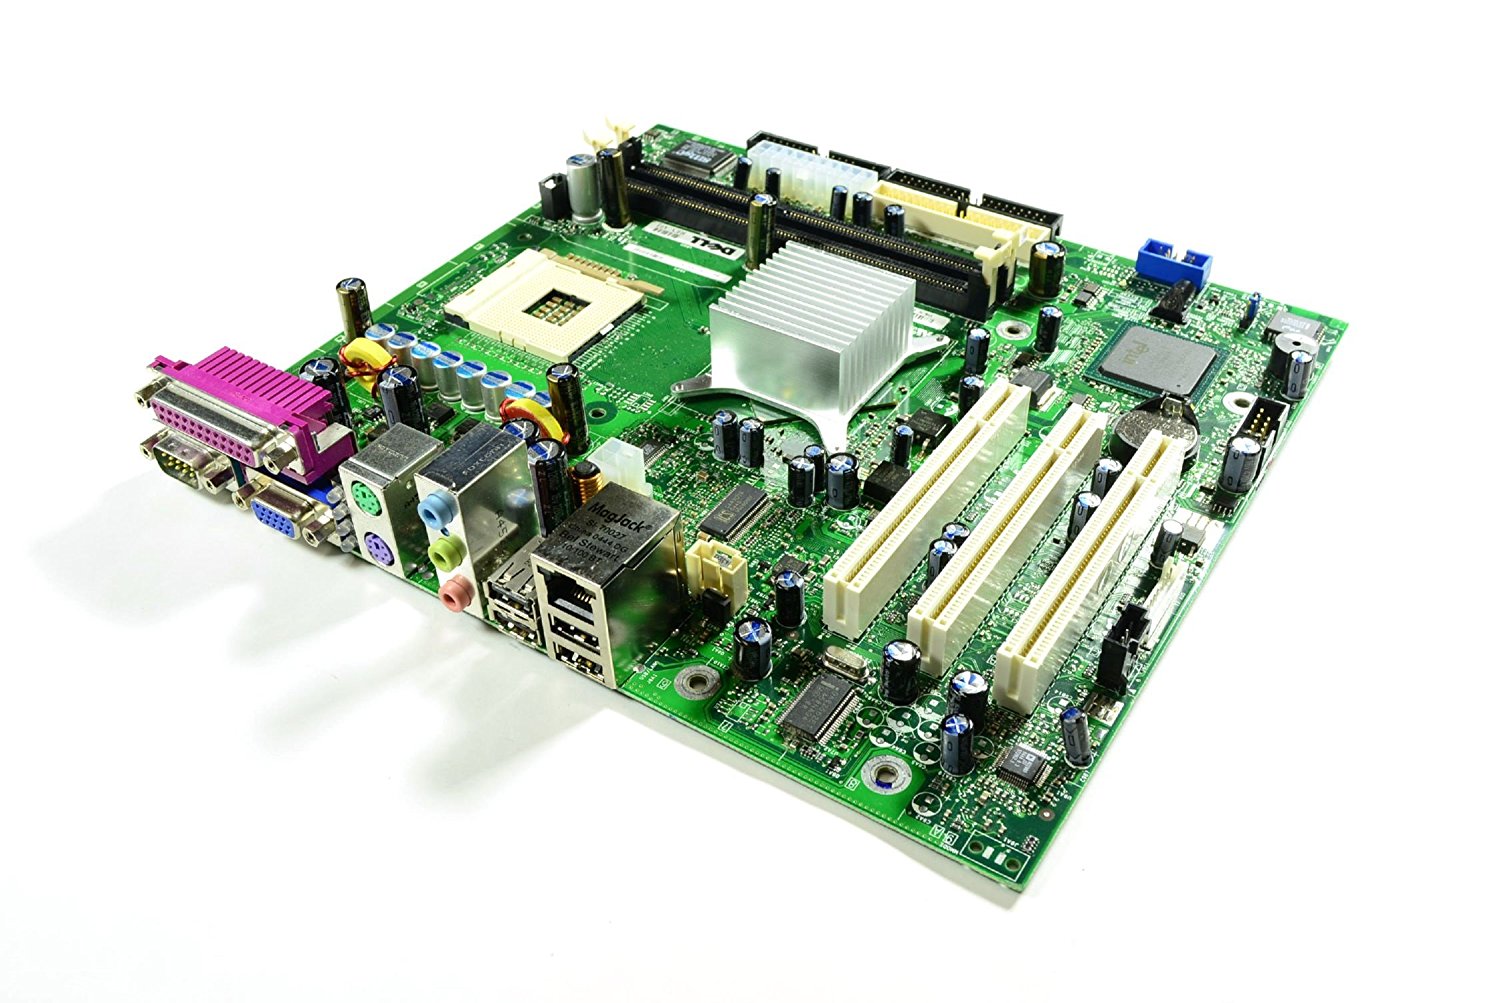 Dell Tc665 Motherboard System Board For Dimension 3000 PC's 0Tc665